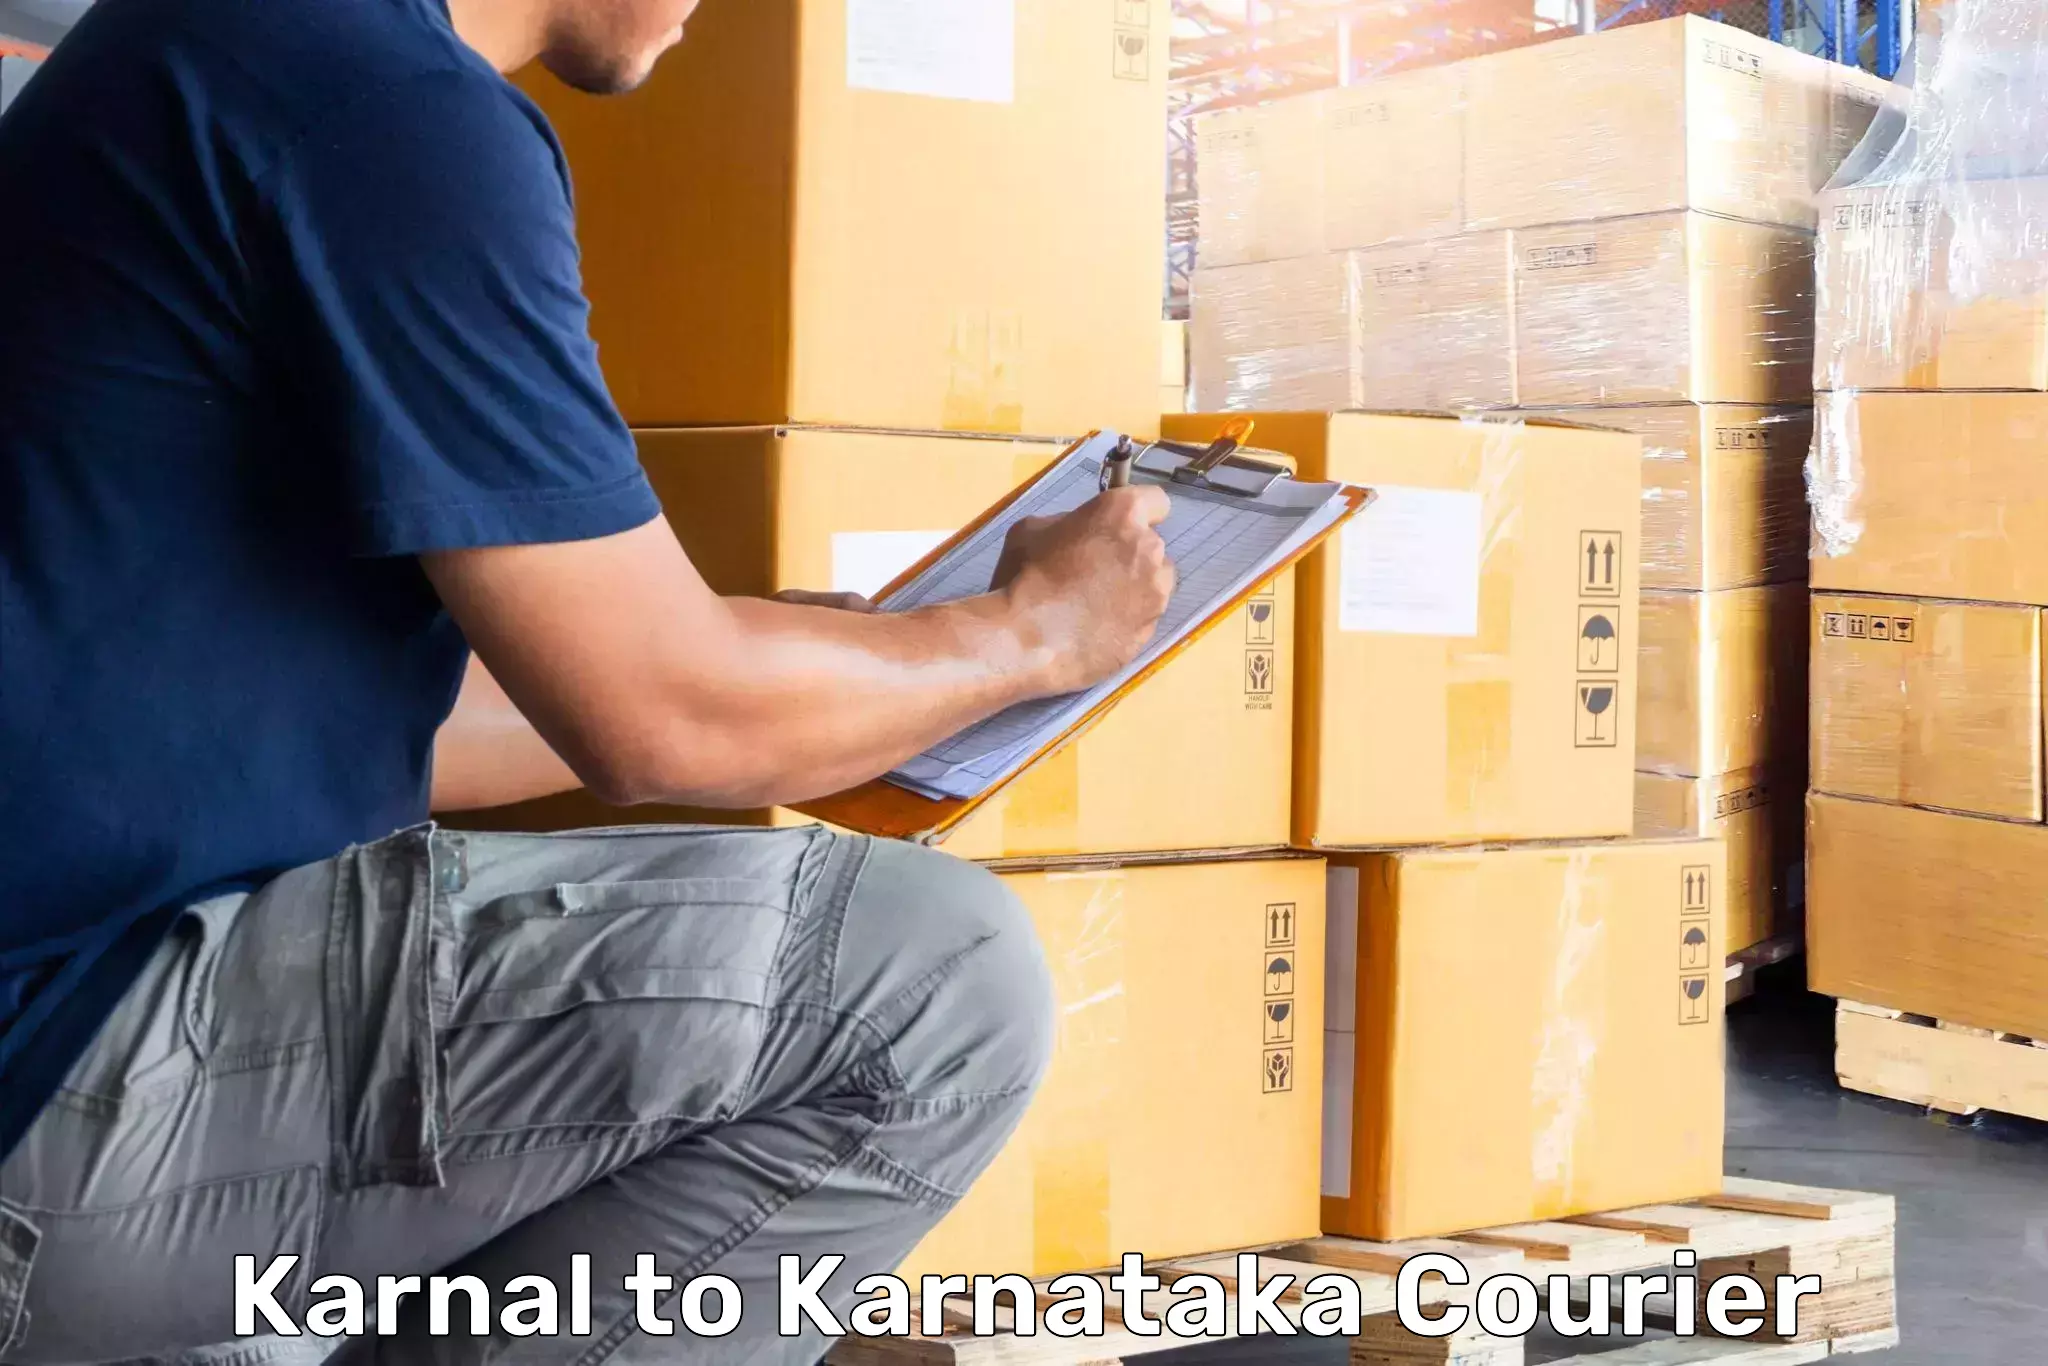 Baggage shipping experts Karnal to Honnavar